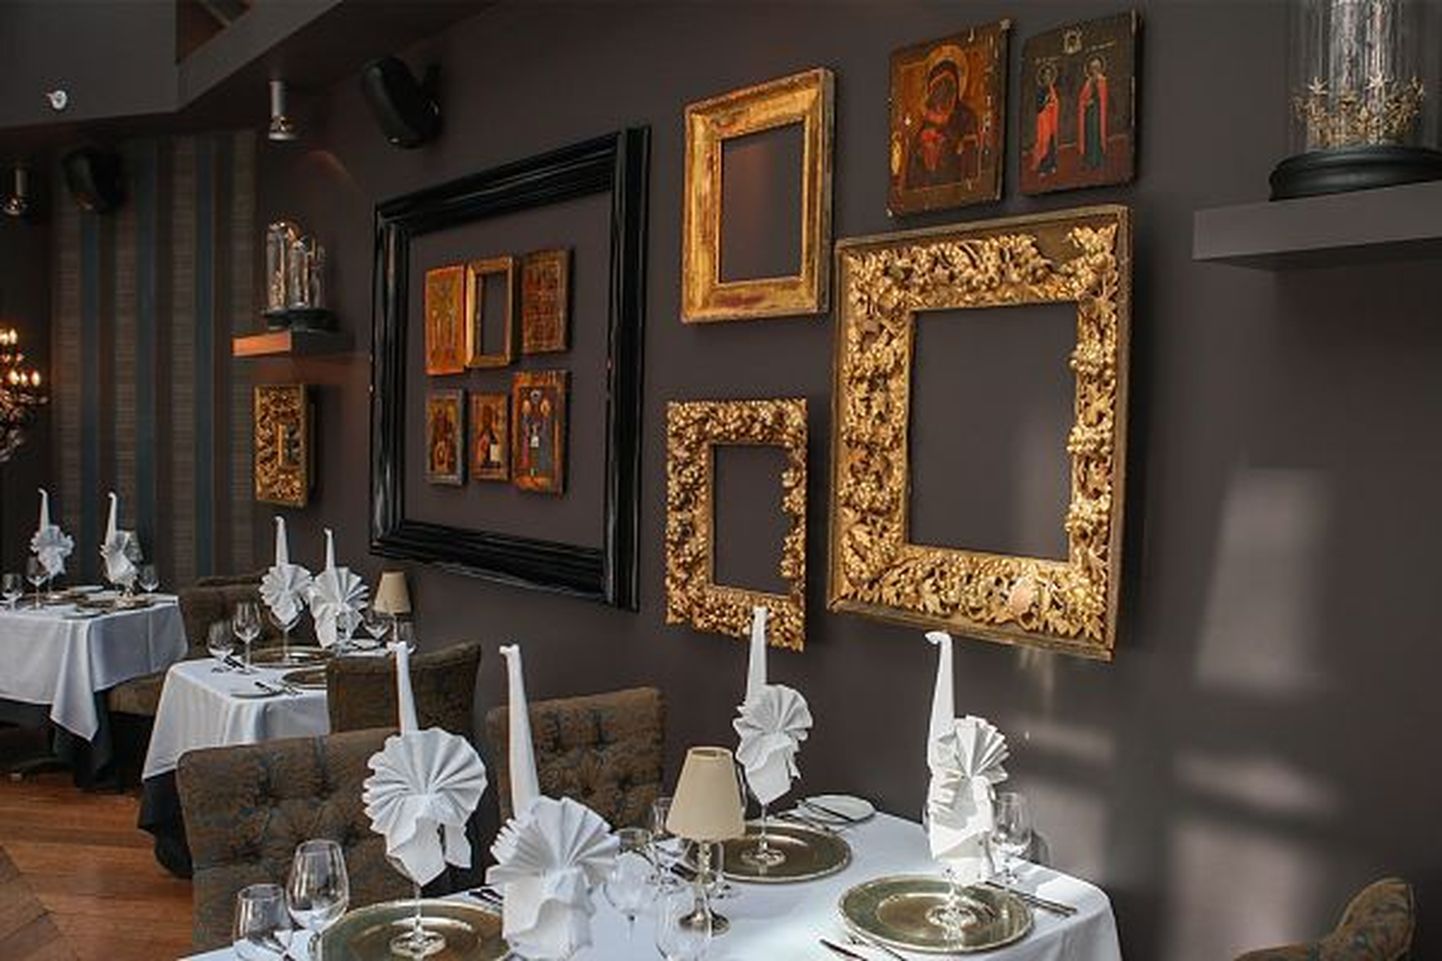 Restoran Tchaikovsky on üks restoranidest, mis kandideerib hõbelusika auhinnale fine dining`u kategoorias.